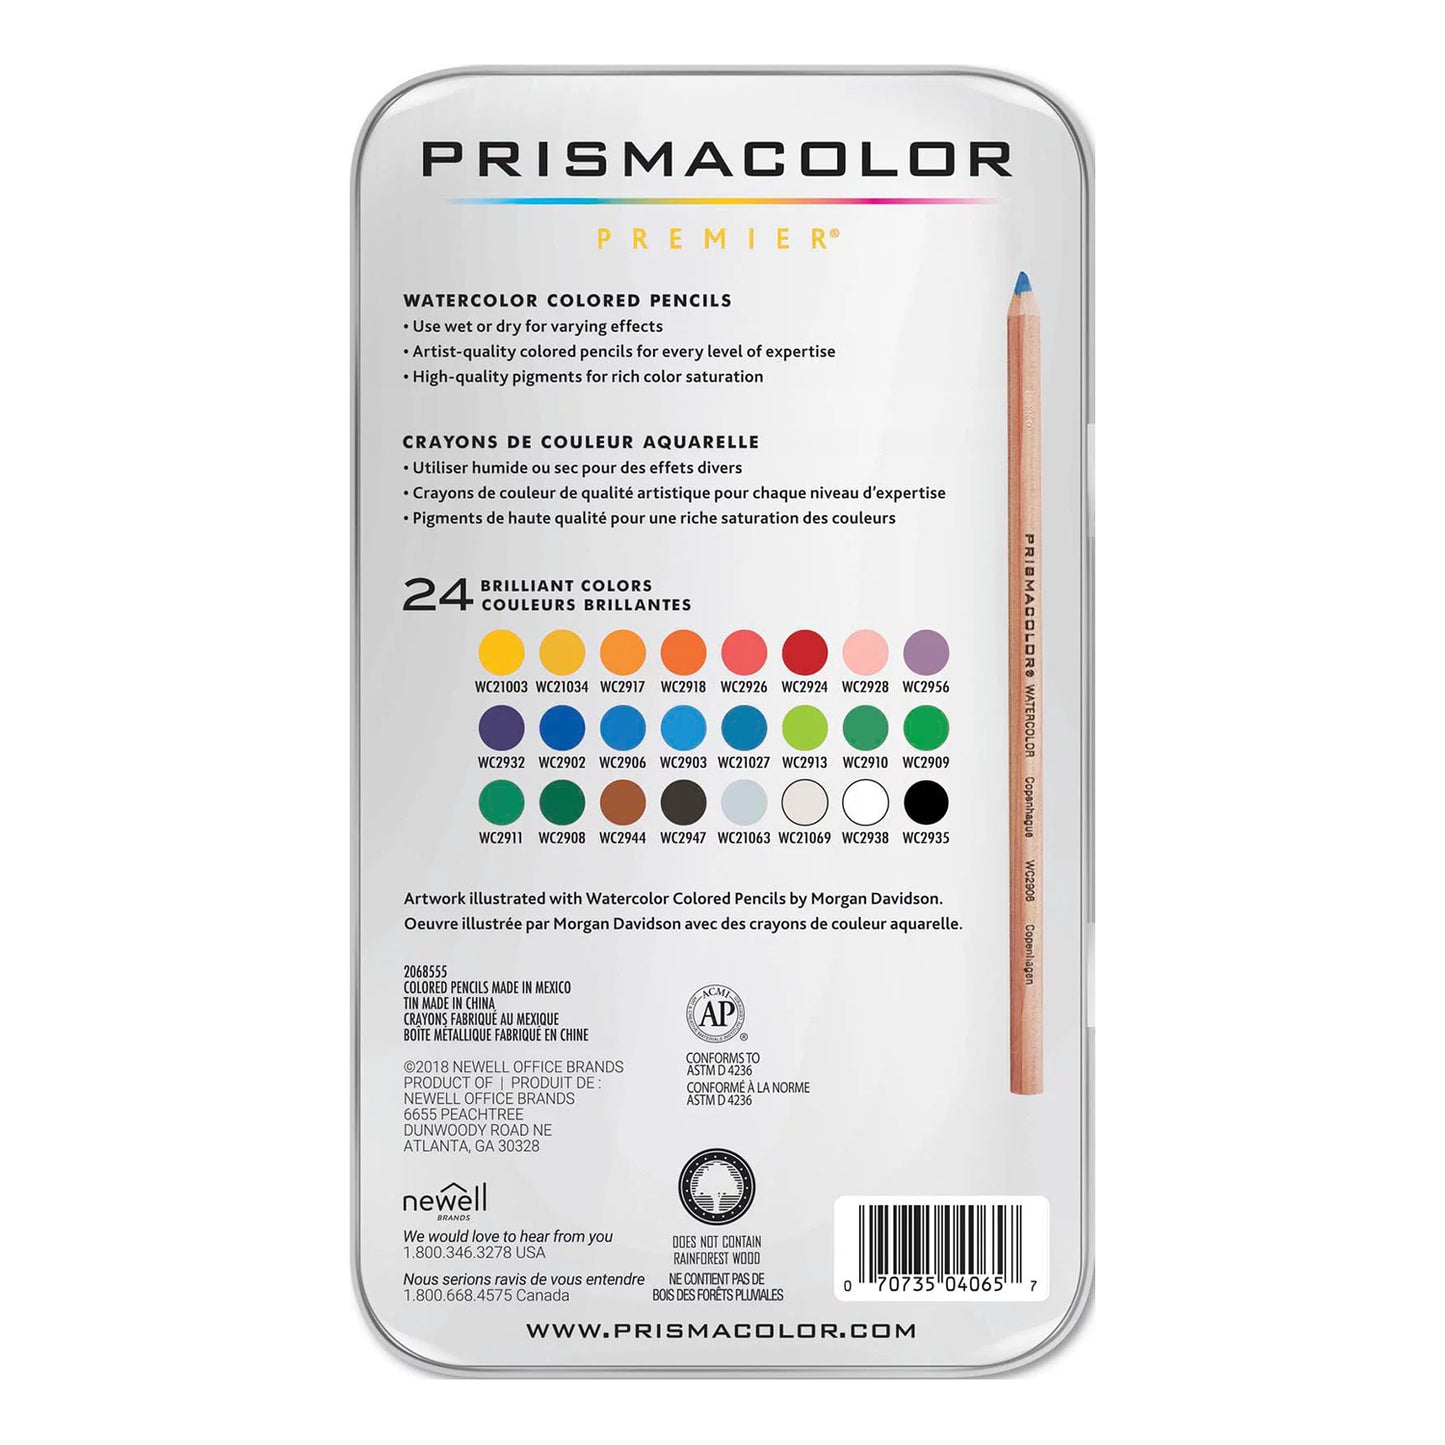 Prismacolor Premier Watercolour Pencil, 24CT